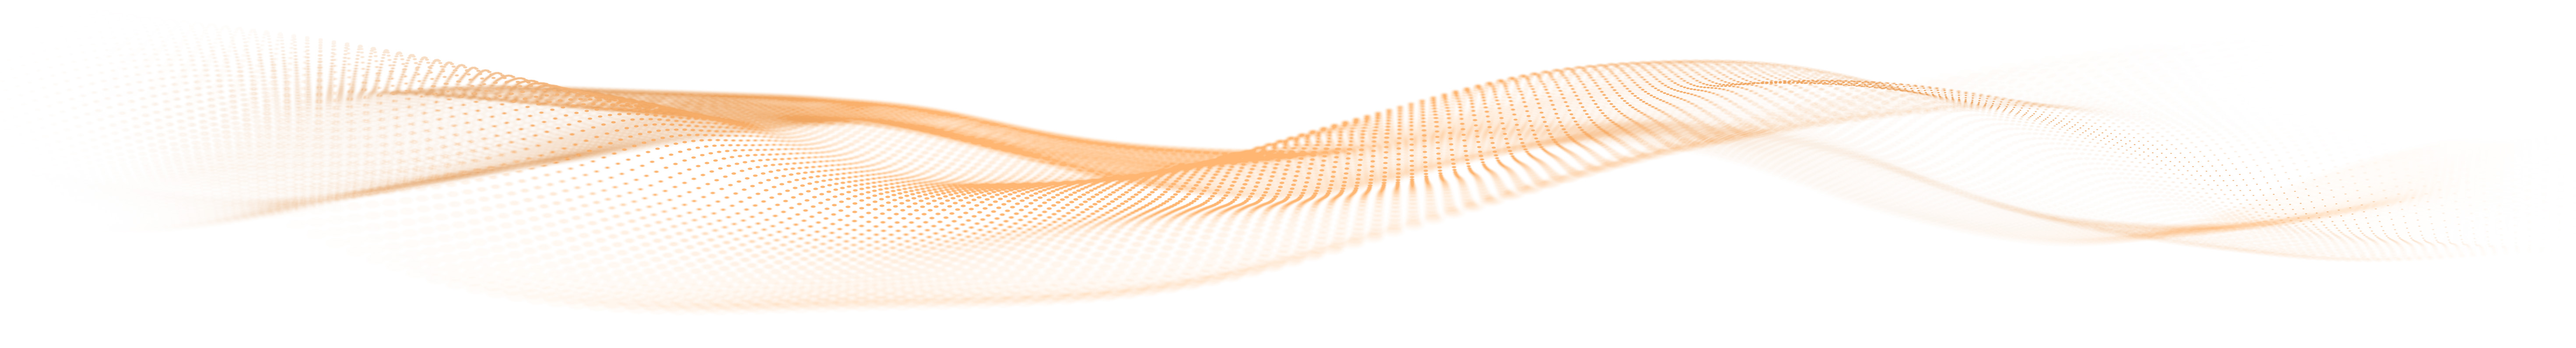 Gráfico de ondas de partículas naranja